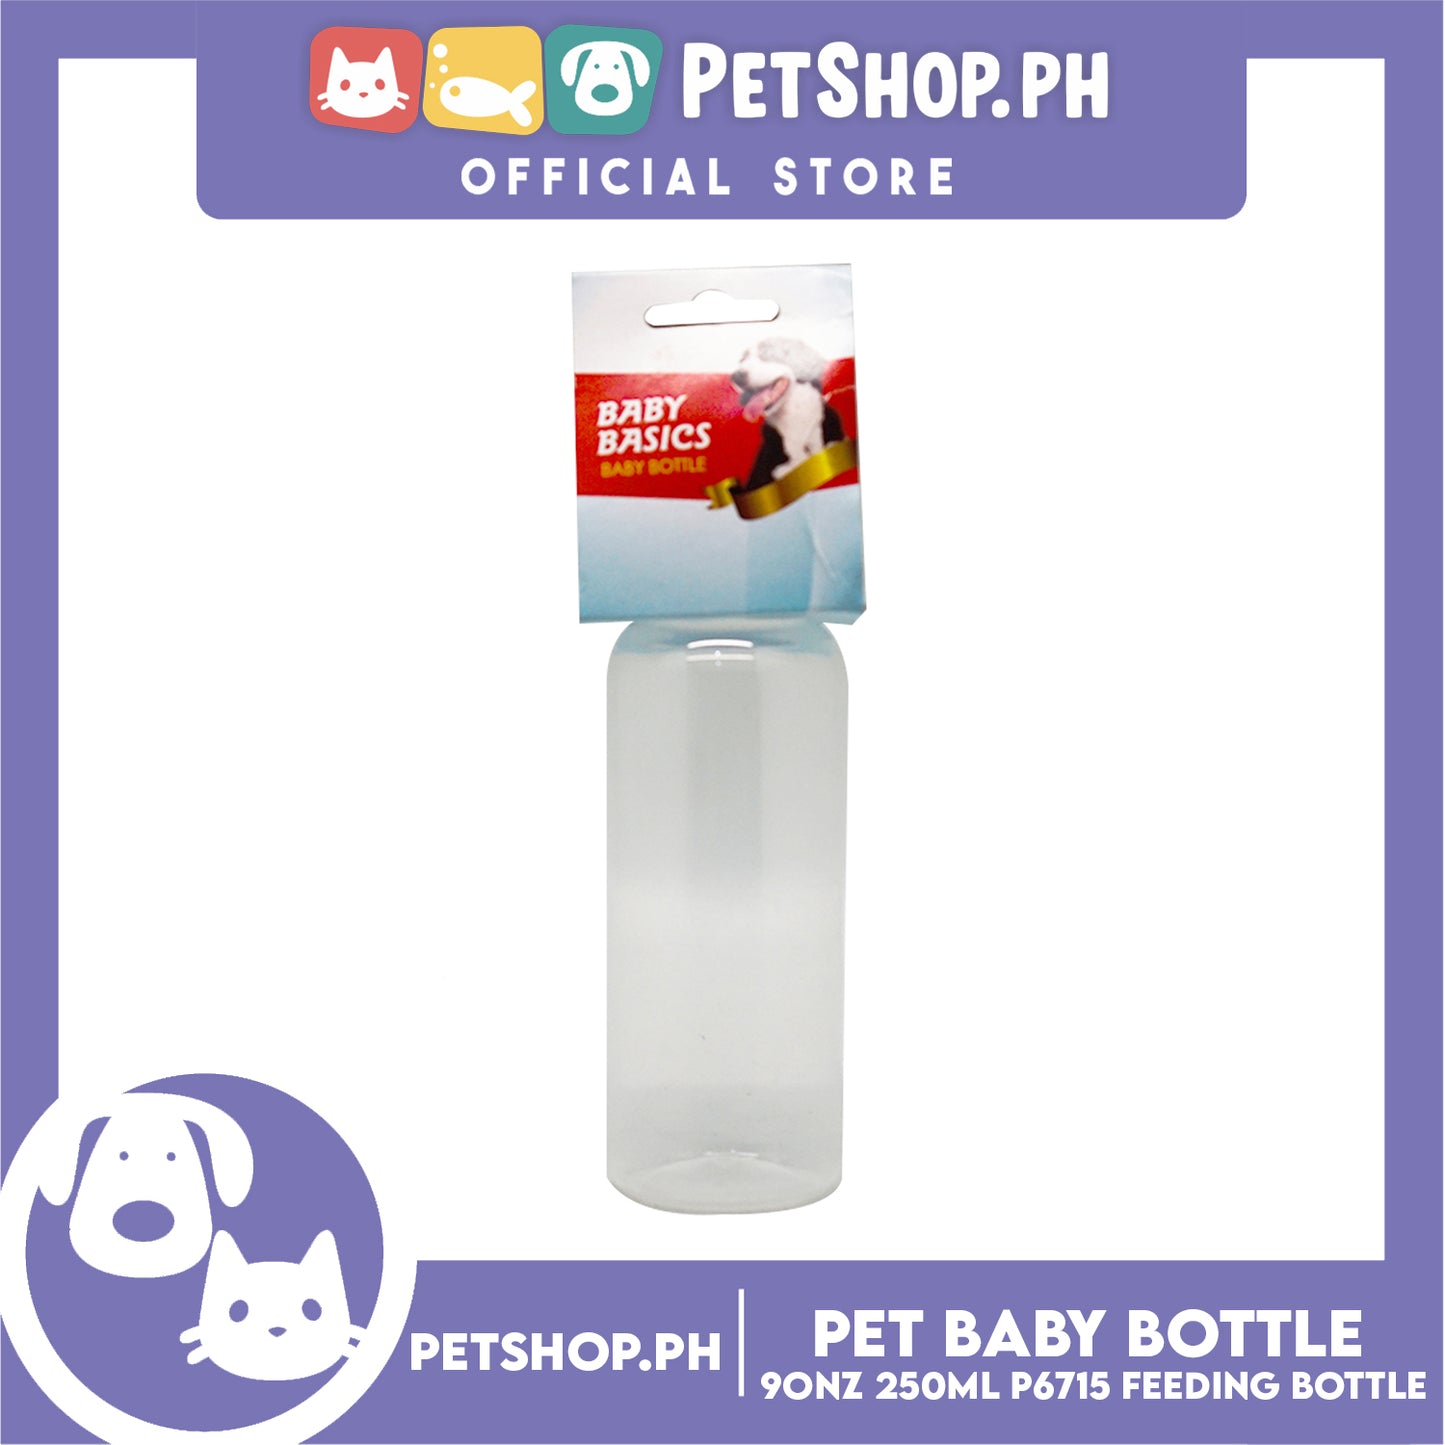 Pet Baby Bottle for Feeding Kittens and Puppies 9oz 250ml P6715 (Blue)- Feeding Bottle, Nursing Kit